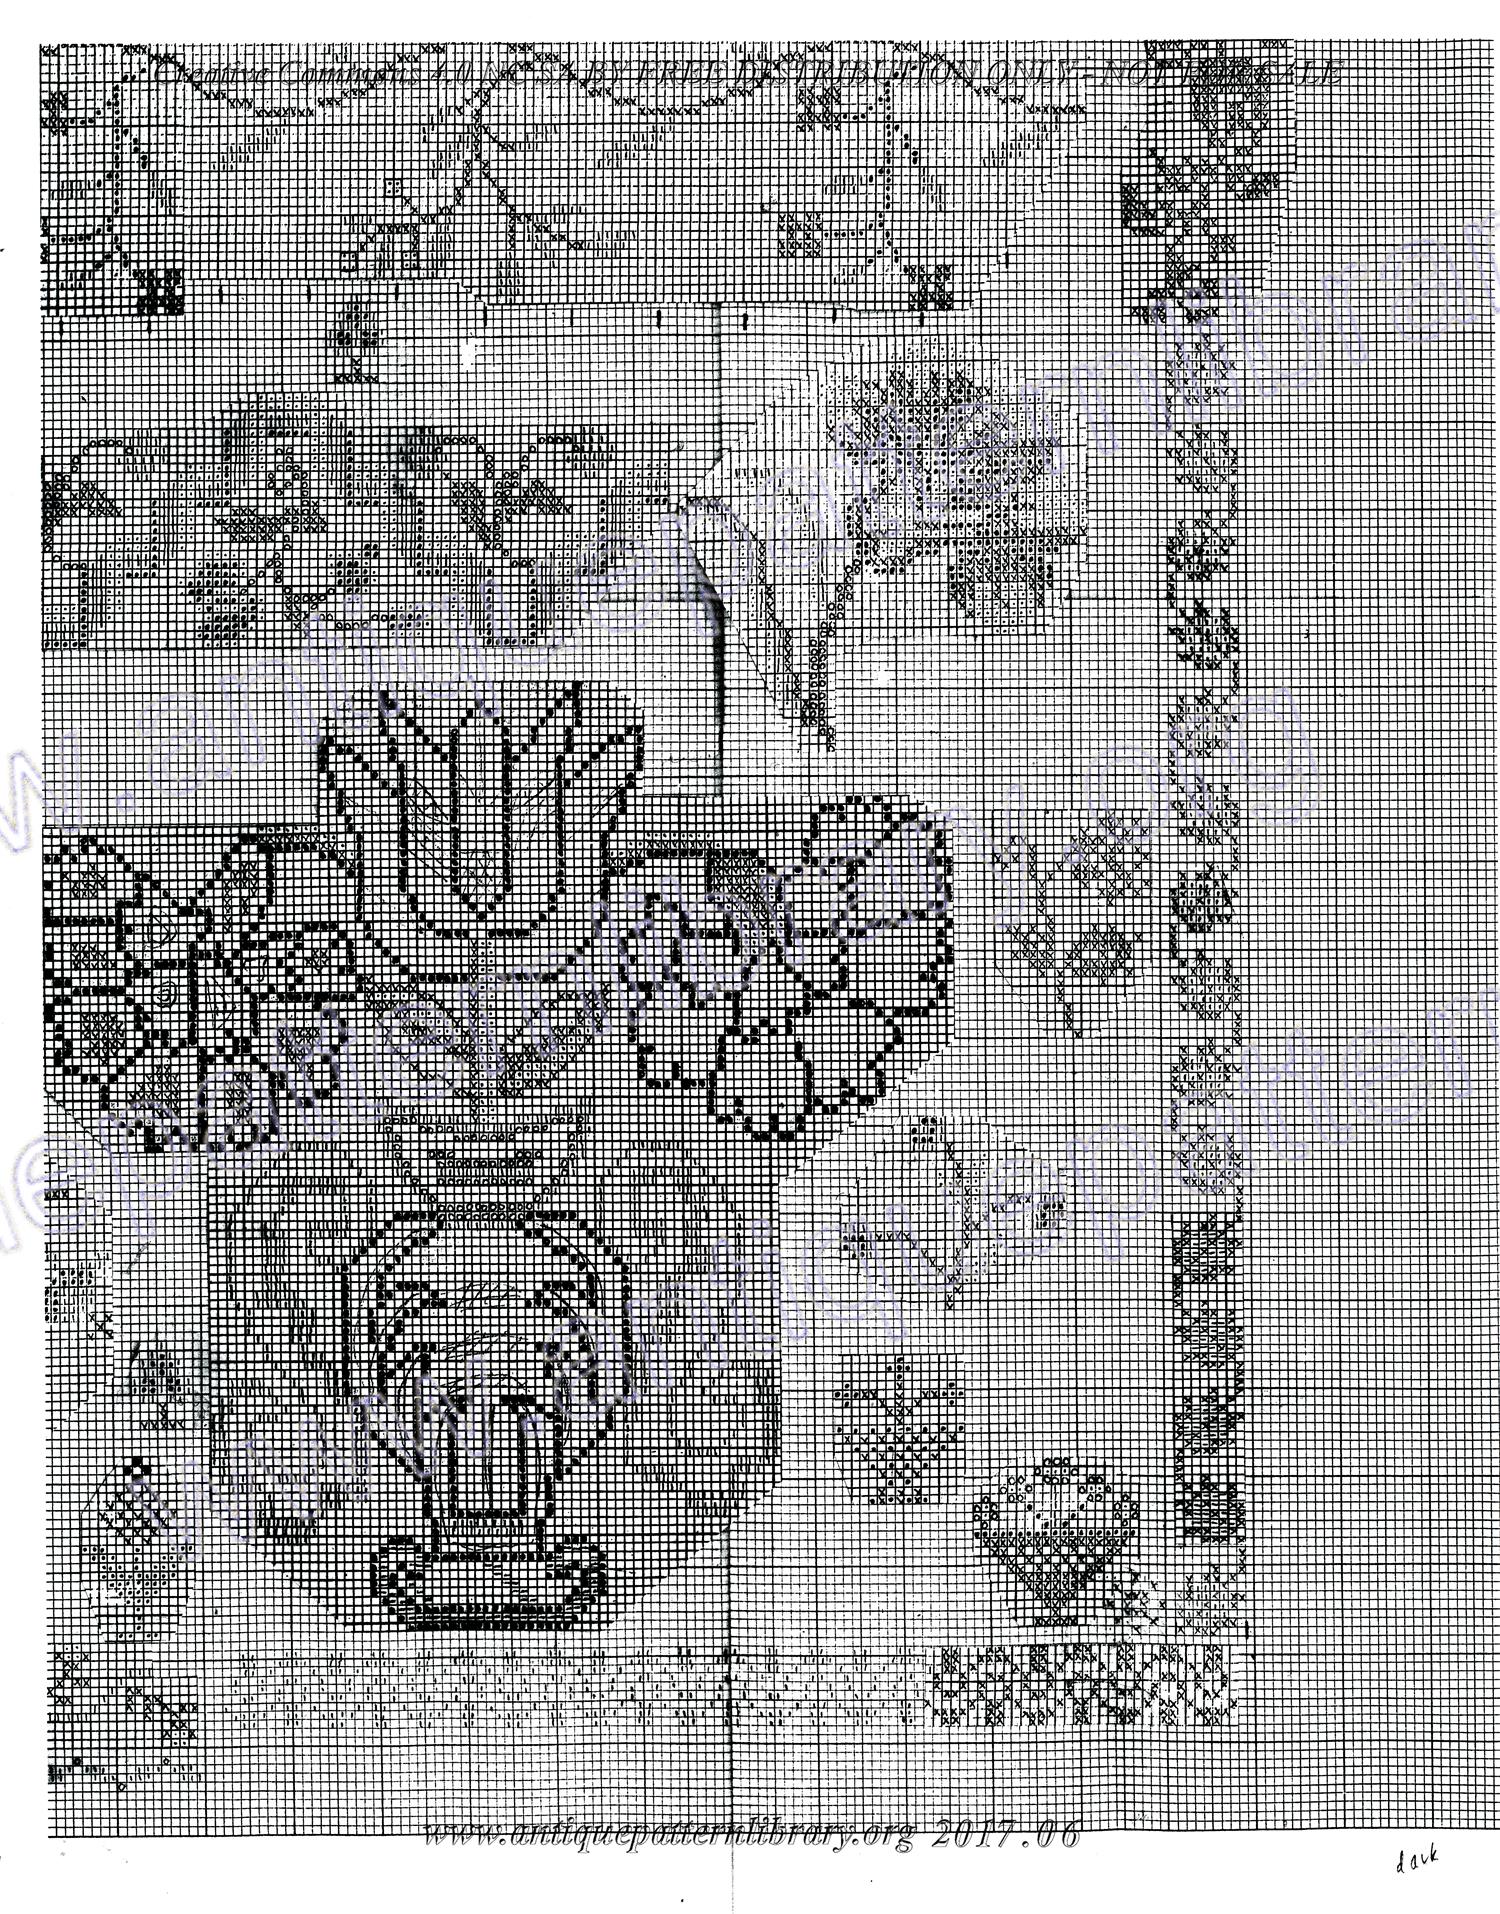 D-CK002 German motifs sampler